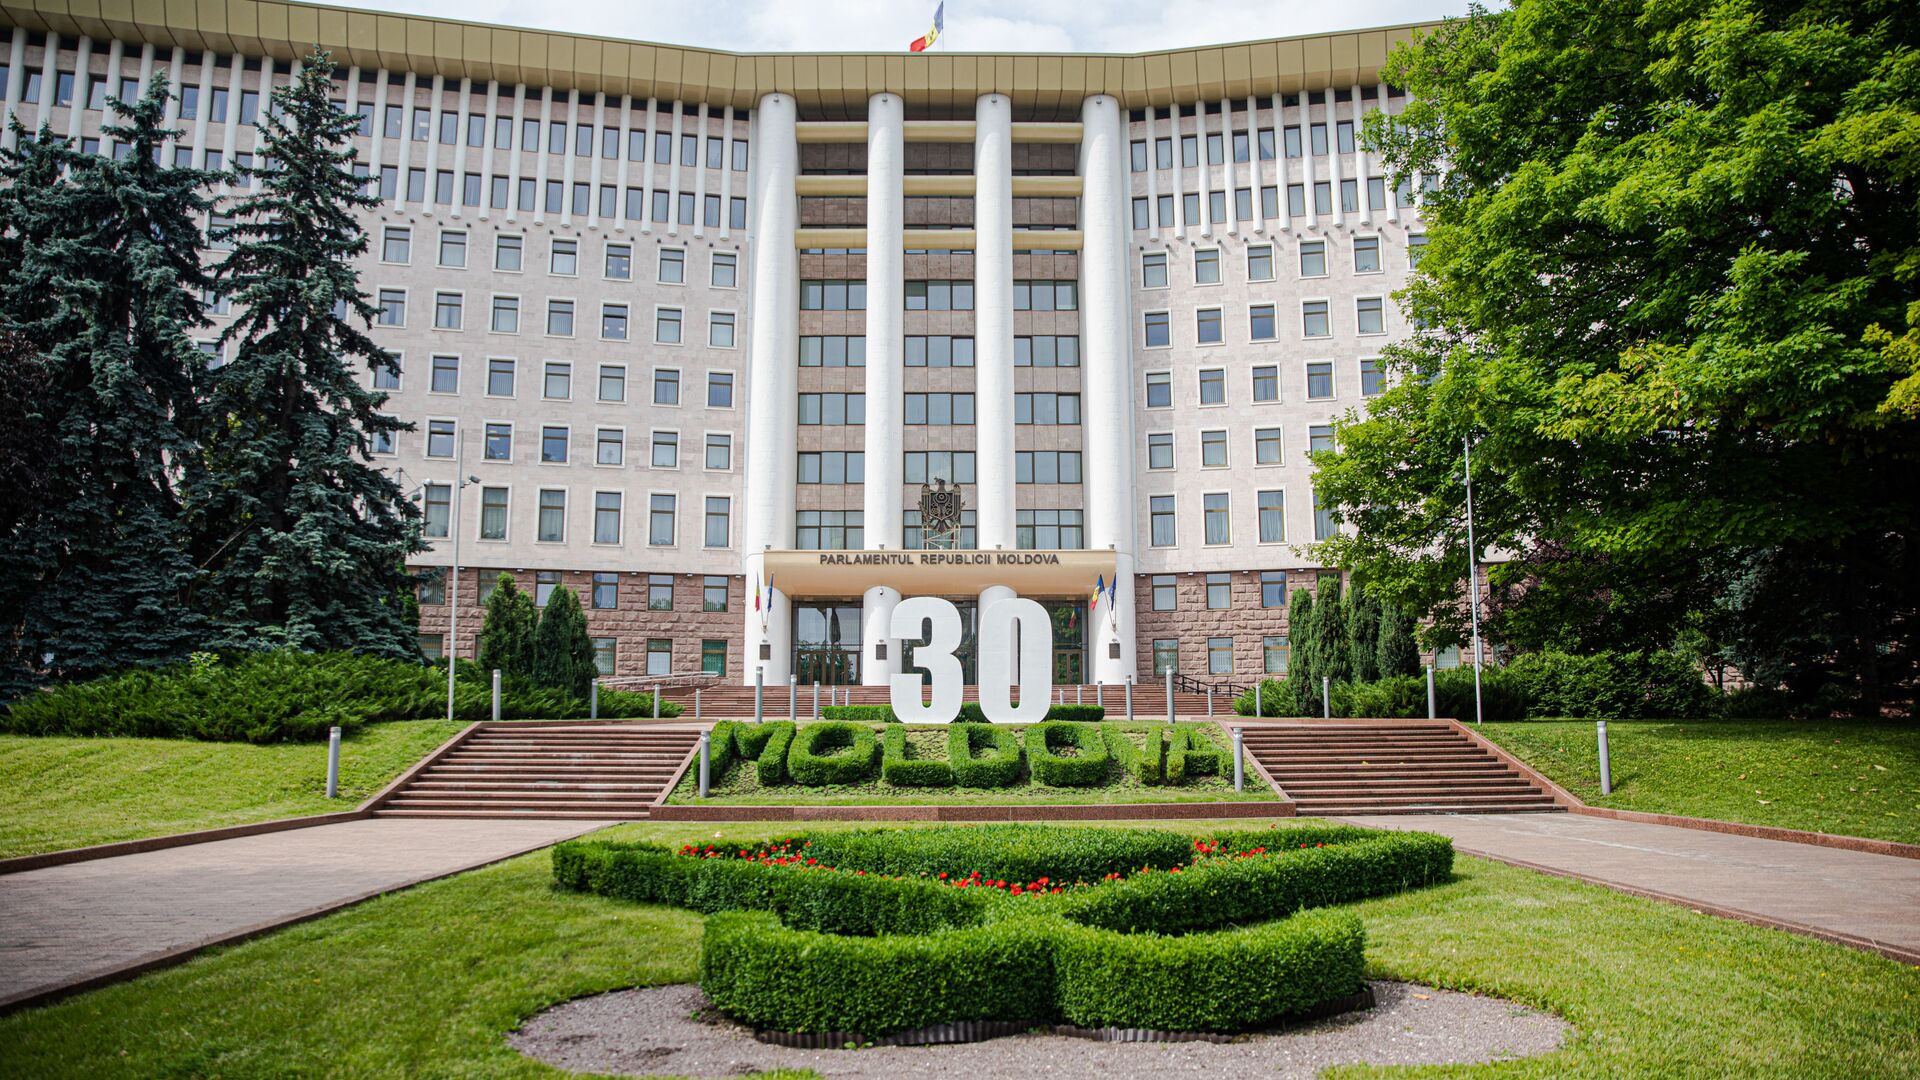 Parlamentul Republicii Moldova - Sputnik Moldova, 1920, 09.07.2021